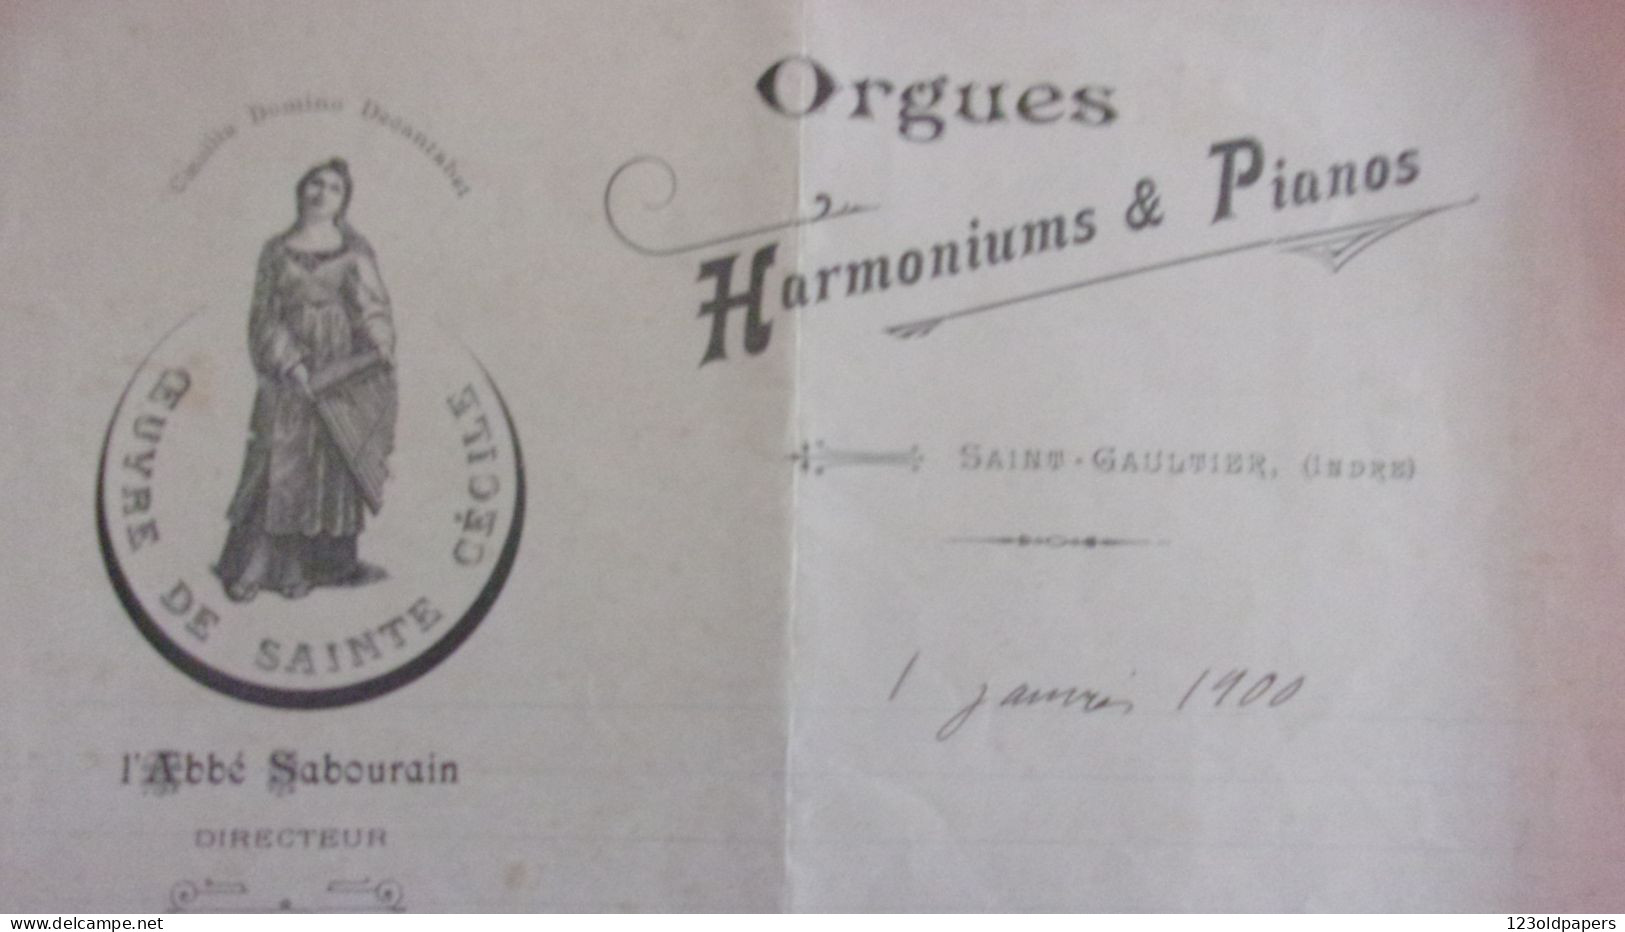 BERRY INDRE SAINT GAULTIER 1900 LAS  ABBE SABOURAIN FACTEUR D ORGUES PIANOS HARMONIUMS LETTRE OEUVRE STE CECILE - Historical Documents